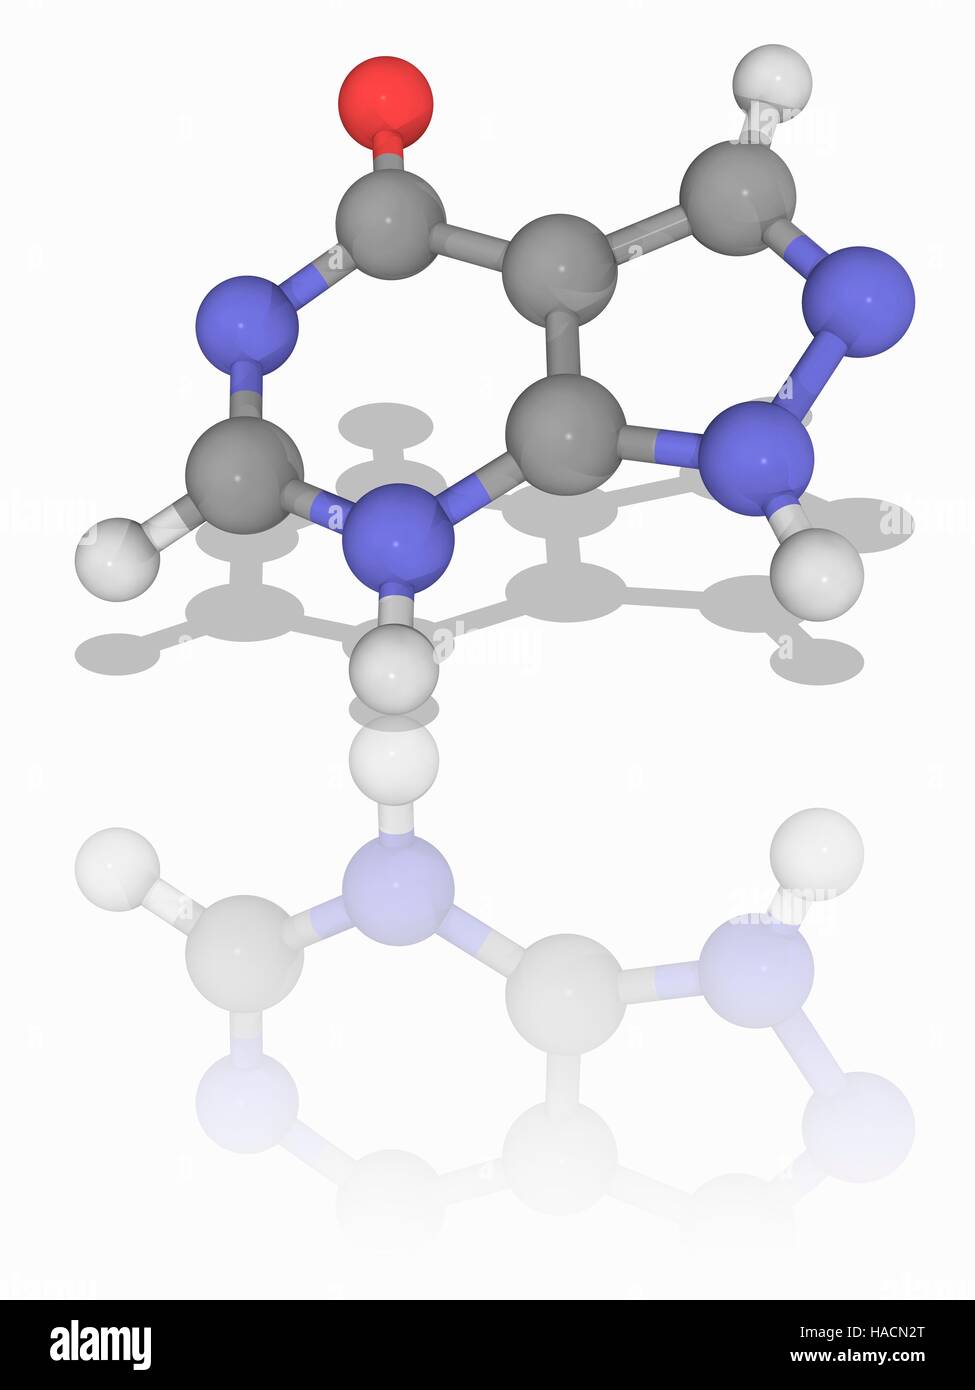 Allopurinol. Molekulares Modell des Medikament Allopurinol (C5. H4. N4.  (O), ein Purin-Analogon zur Behandlung von Hyperurikämie (überschüssige  Harnsäure im Blut) und Gicht verwendet. Atome als Kugeln dargestellt werden  und sind farblich gekennzeichnet: